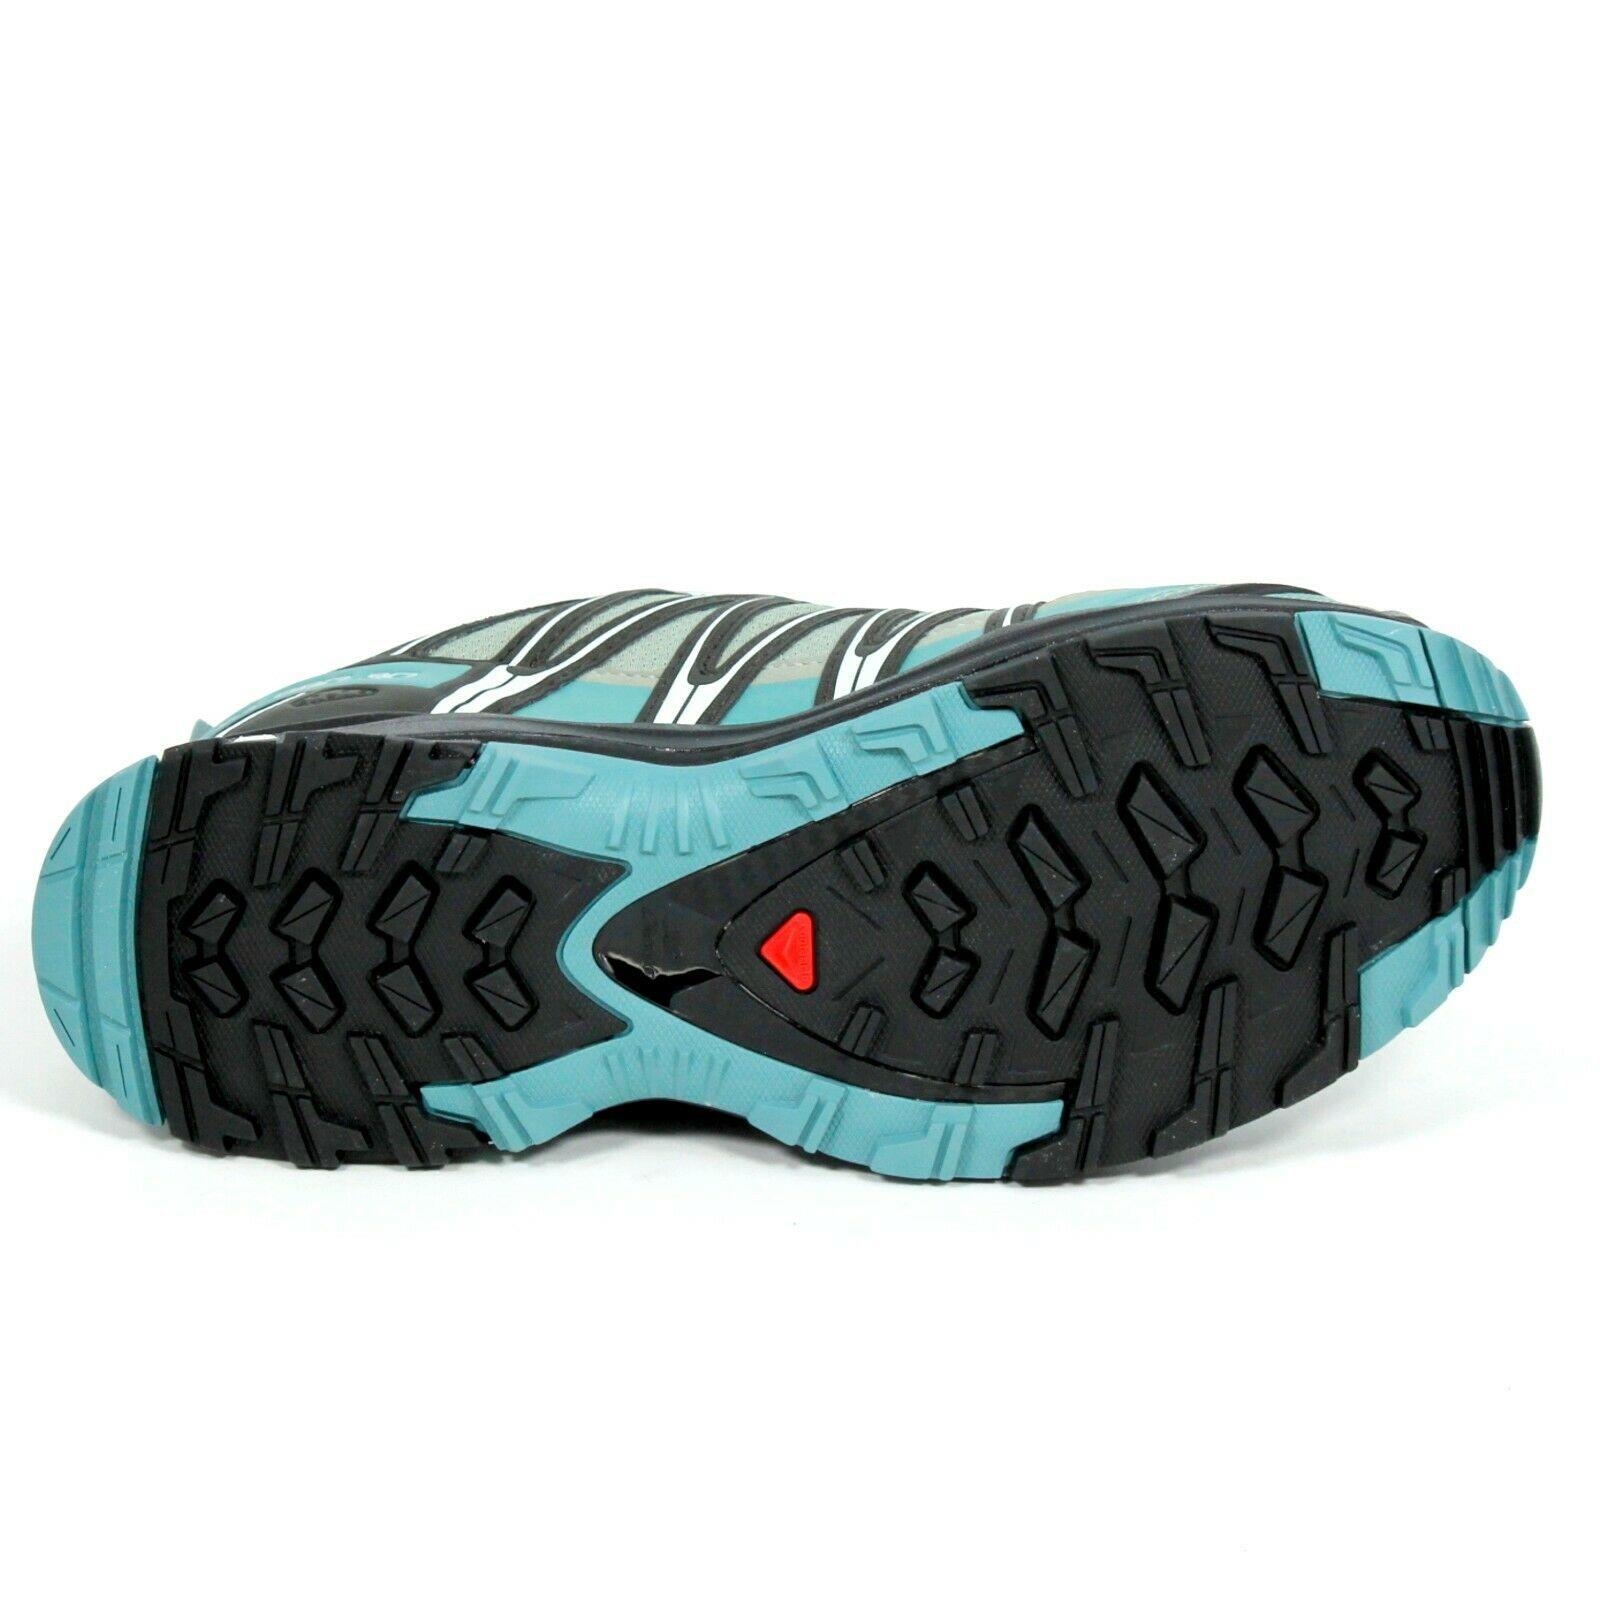 Salomon shoes Pro Trail - Multicolor 2